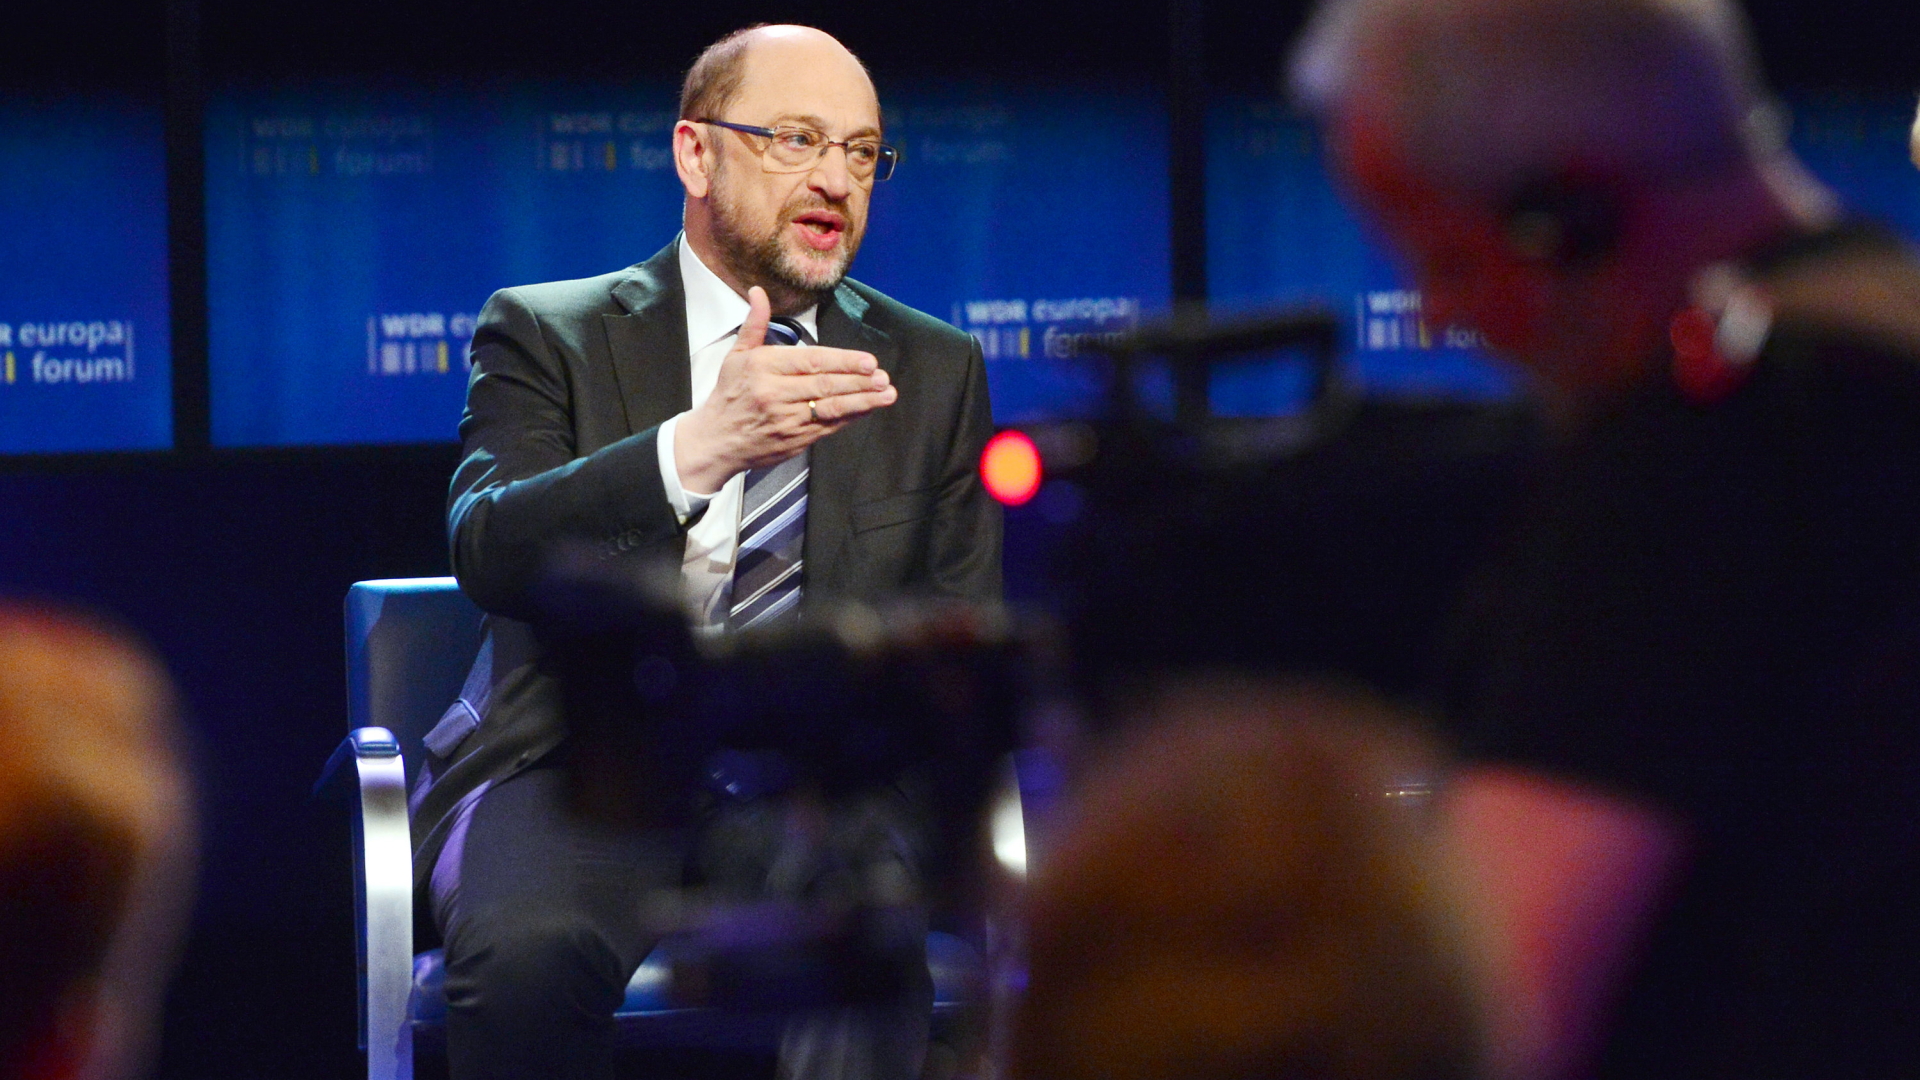 Martin Schulz spricht beim WDR-Europaforum | dpa